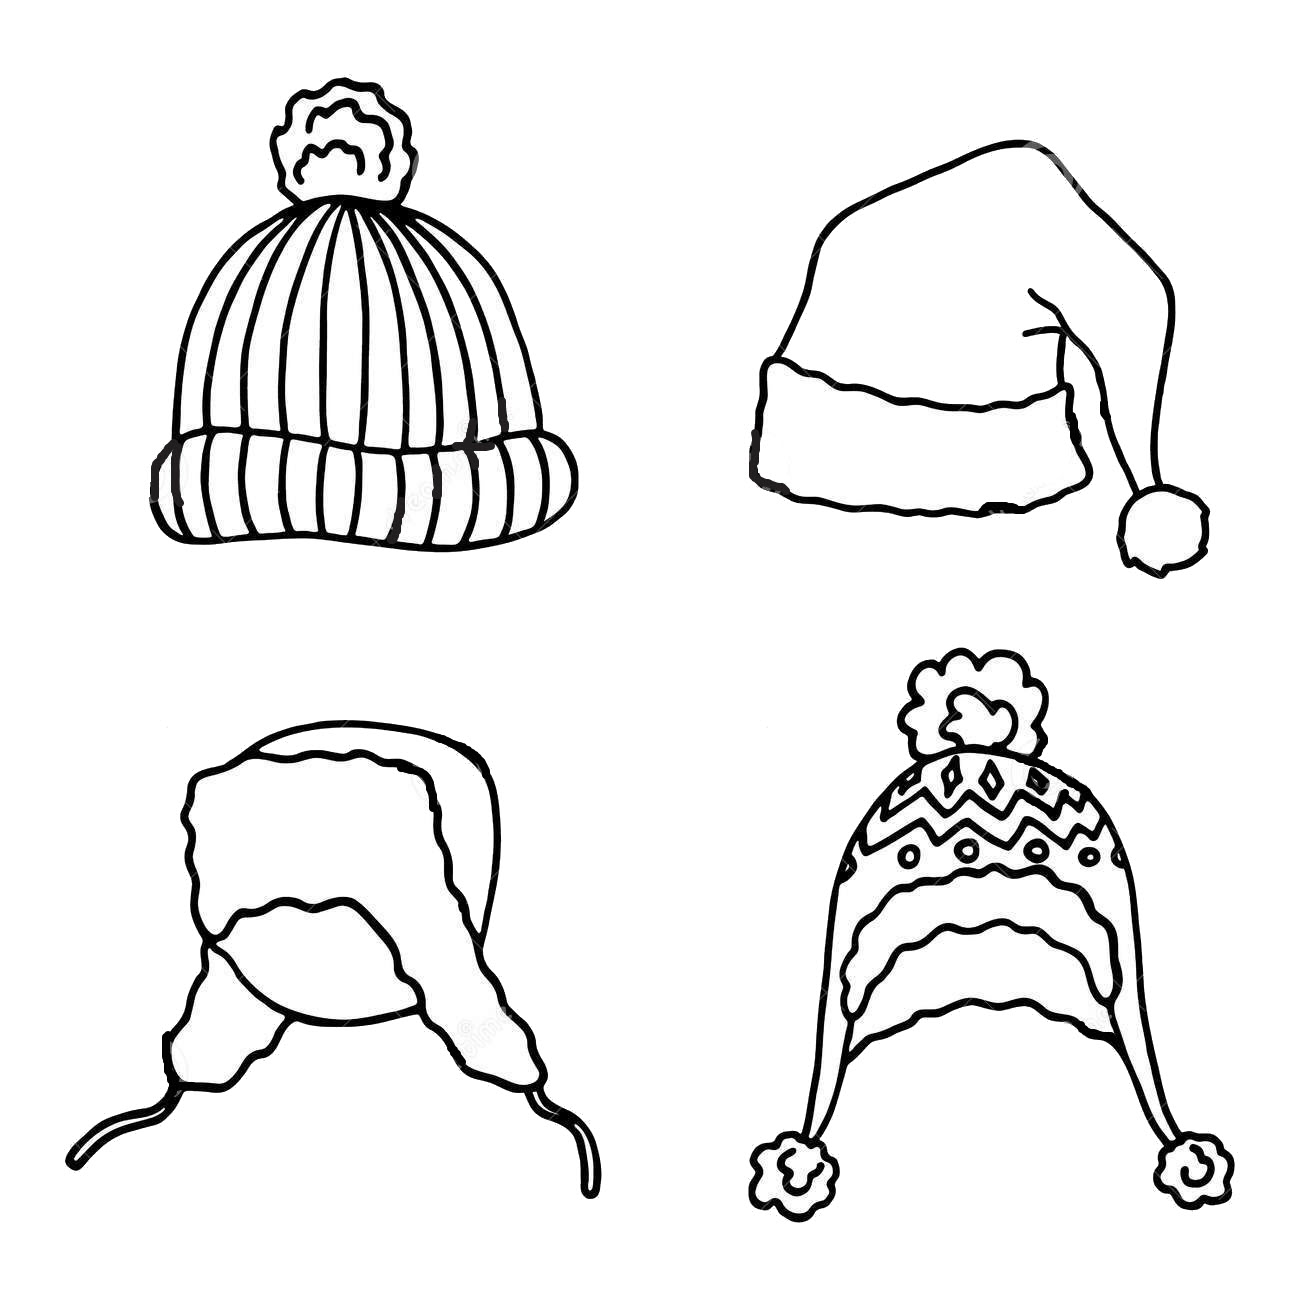 Tranh tô màu những chiếc nón dành cho mùa đông